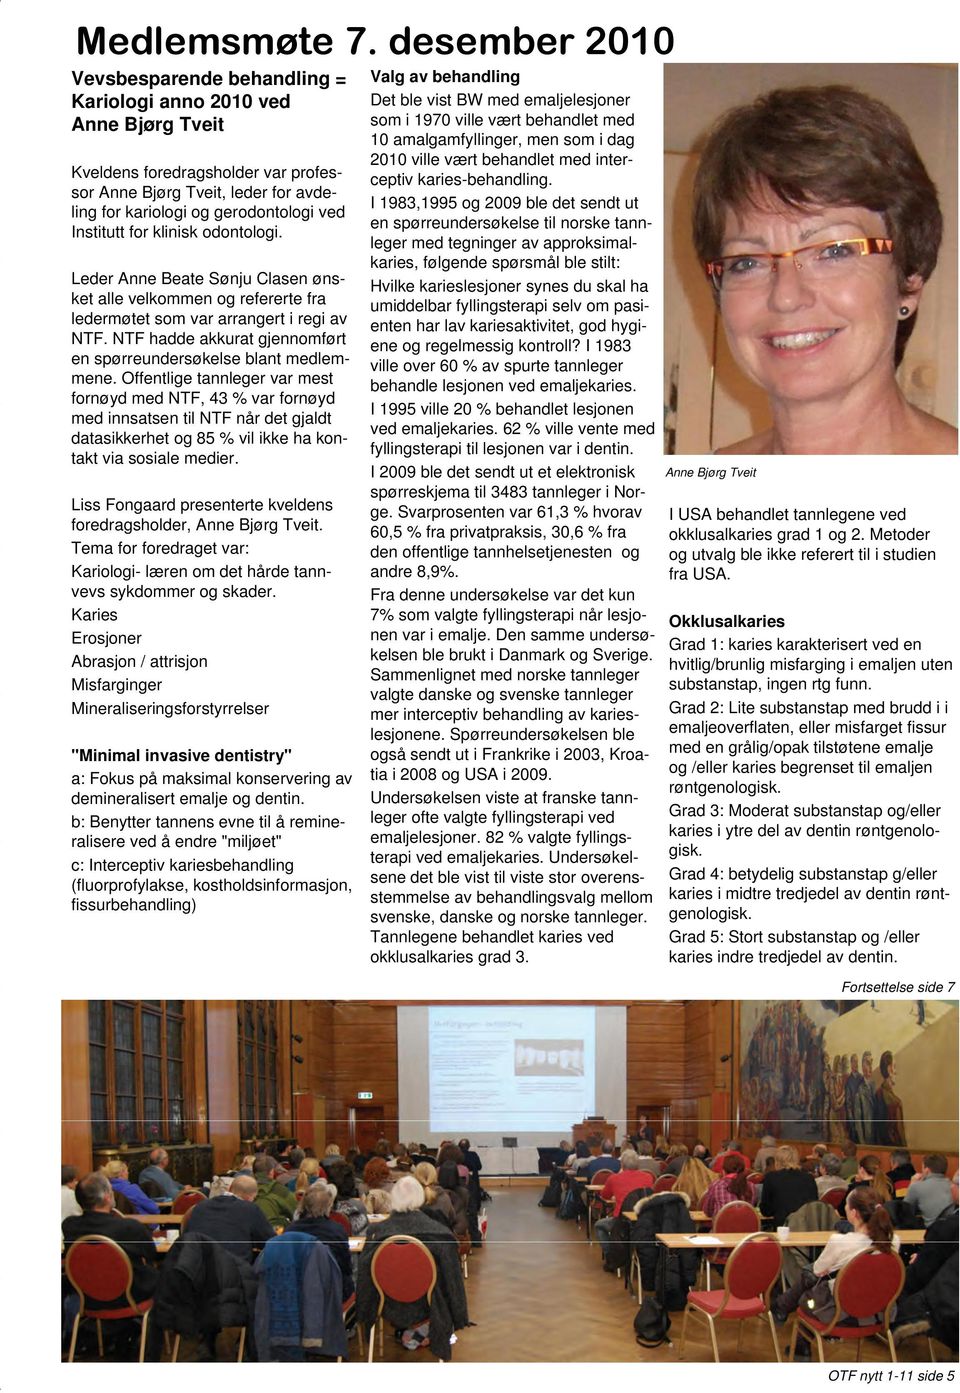 Institutt for klinisk odontologi. Leder Anne Beate Sønju Clasen ønsket alle velkommen og refererte fra ledermøtet som var arrangert i regi av NTF.